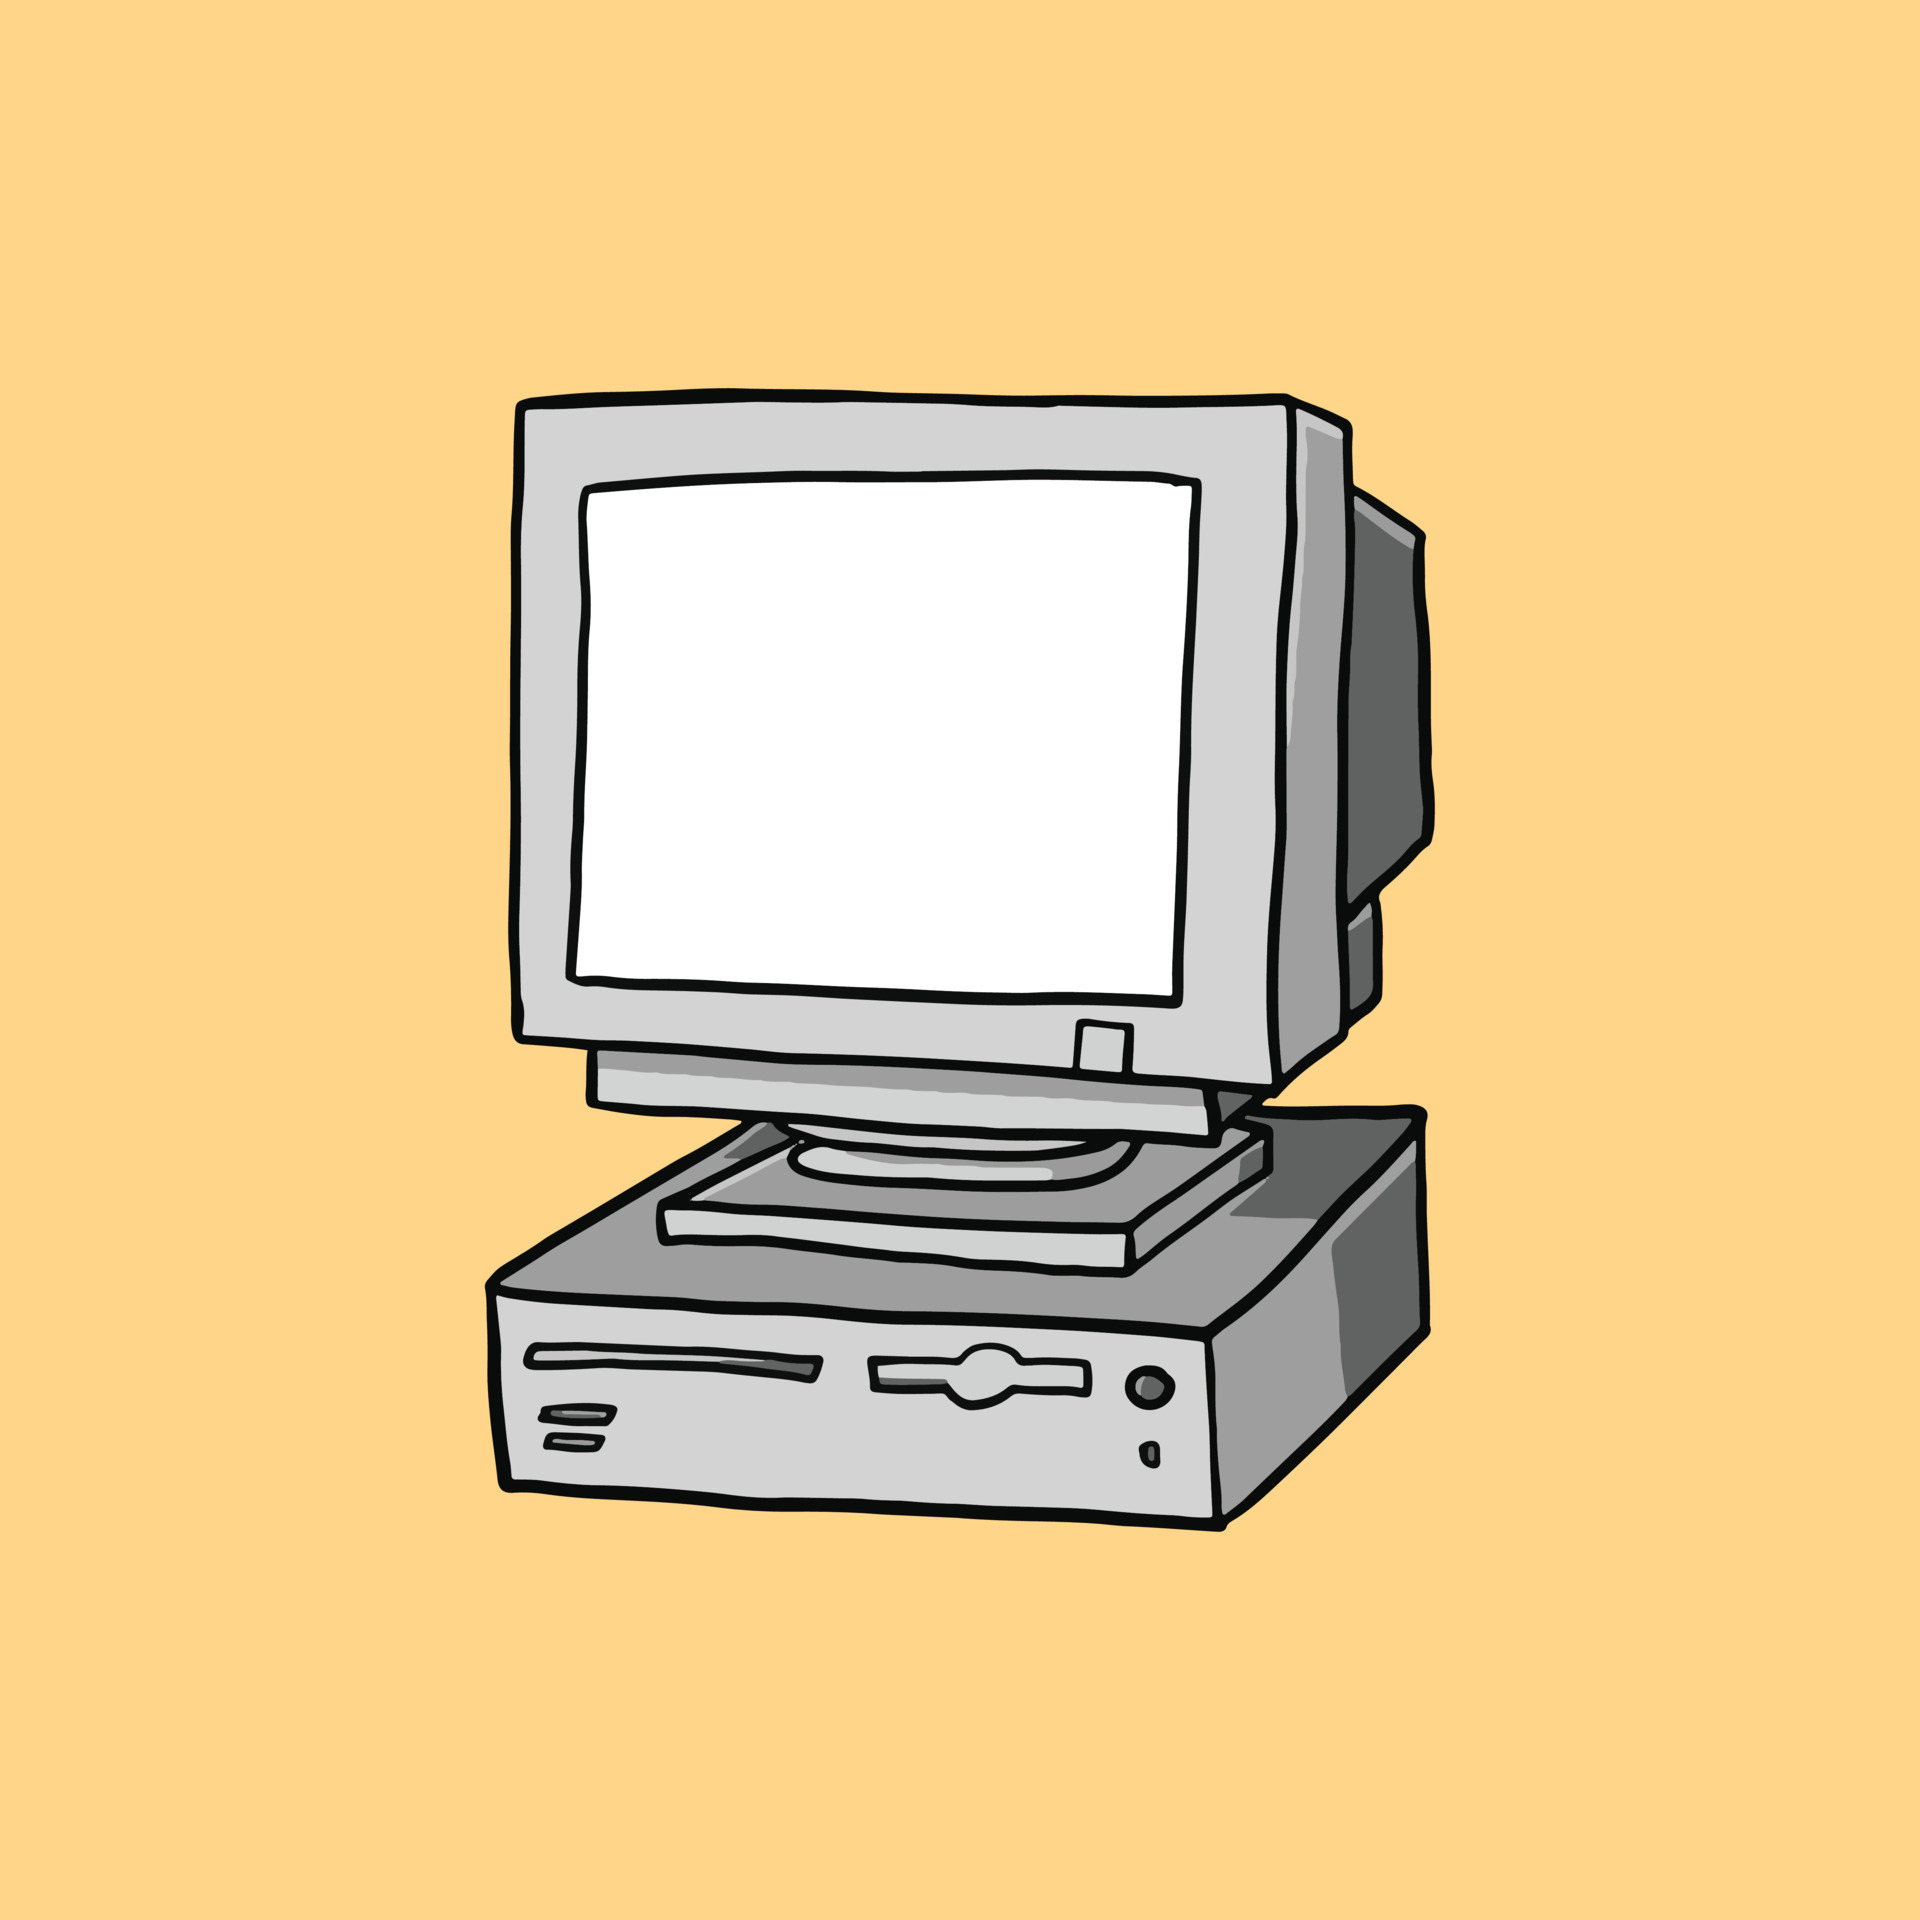 Bạn đang tìm kiếm hình ảnh máy tính cũ độc đáo và đẹp mắt? Không nên bỏ qua bức tranh về một chiếc máy tính cũ trên nền vàng tuyệt đẹp này. Với những chi tiết chi tiết cực kỳ chân thực và màu sắc phong phú, bức hình này sẽ đưa bạn trở lại thời kỳ hoàng kim của máy tính.